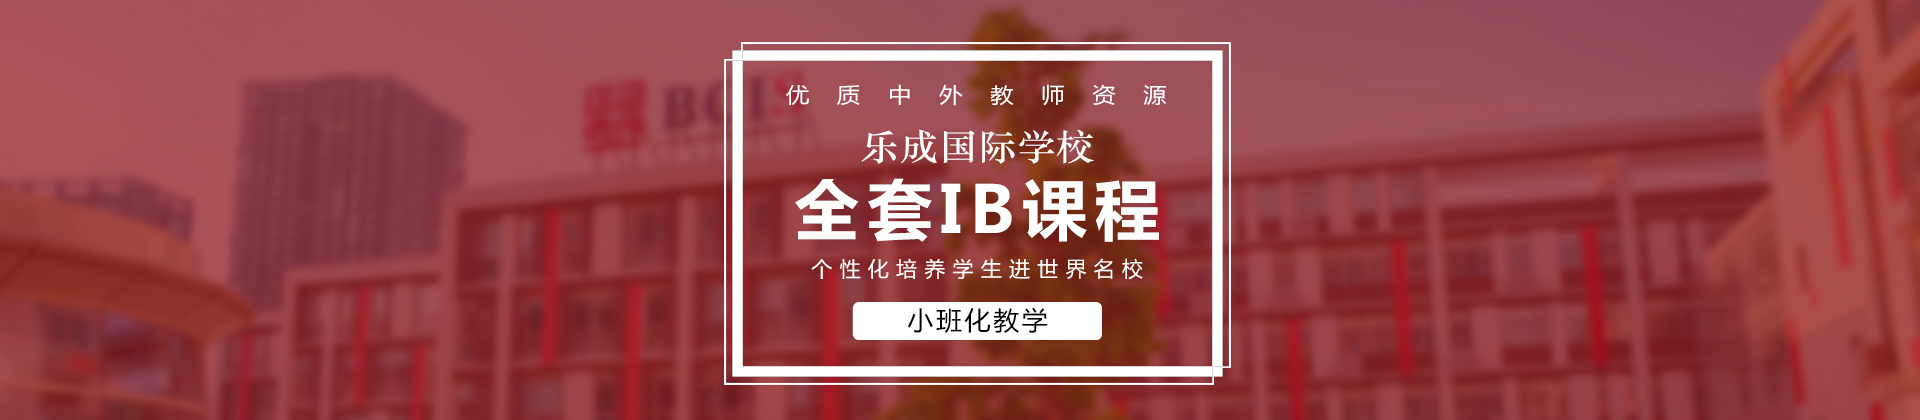 北京乐成国际学校